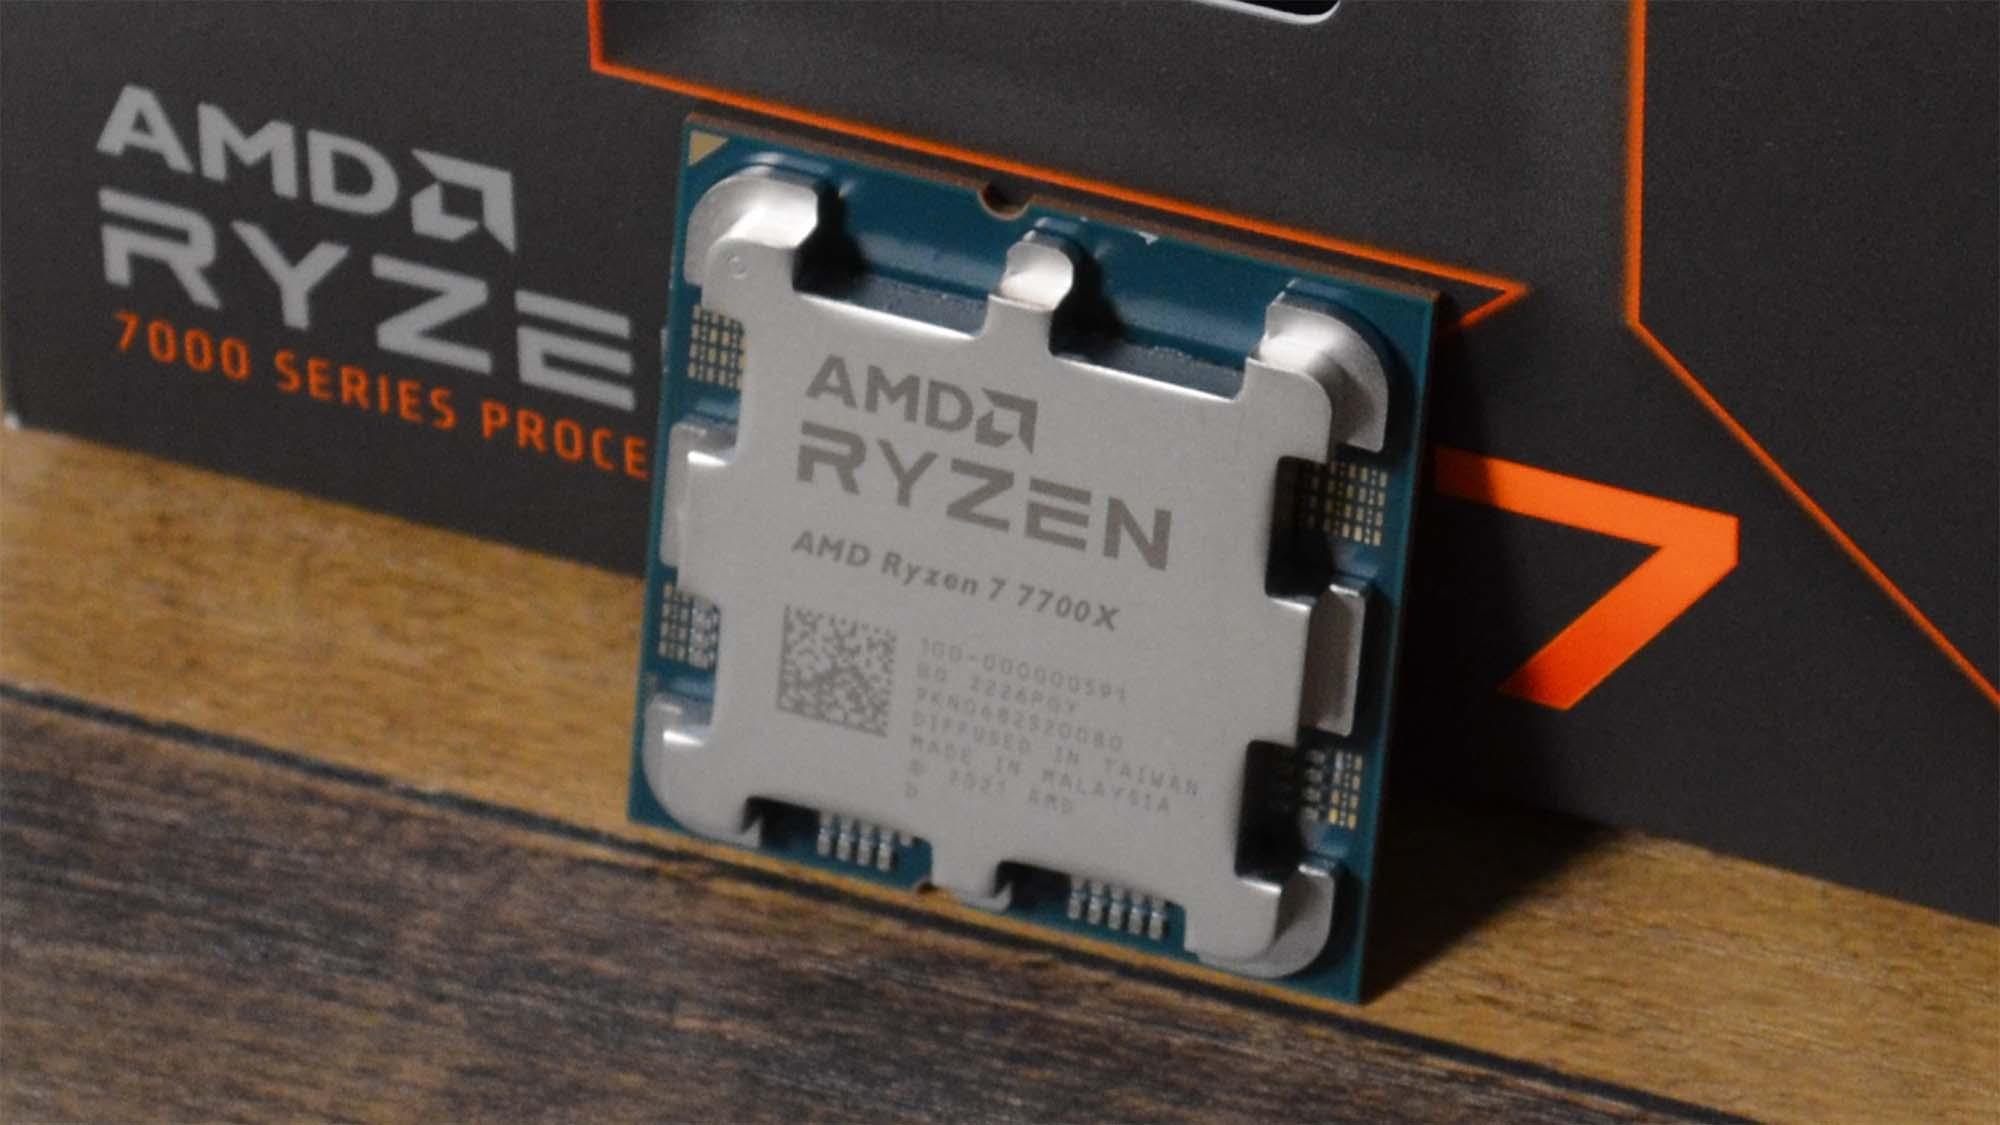 Ryzen 7 7700X Core8 (5.4Ghz Turbo, 16threads, 105W)